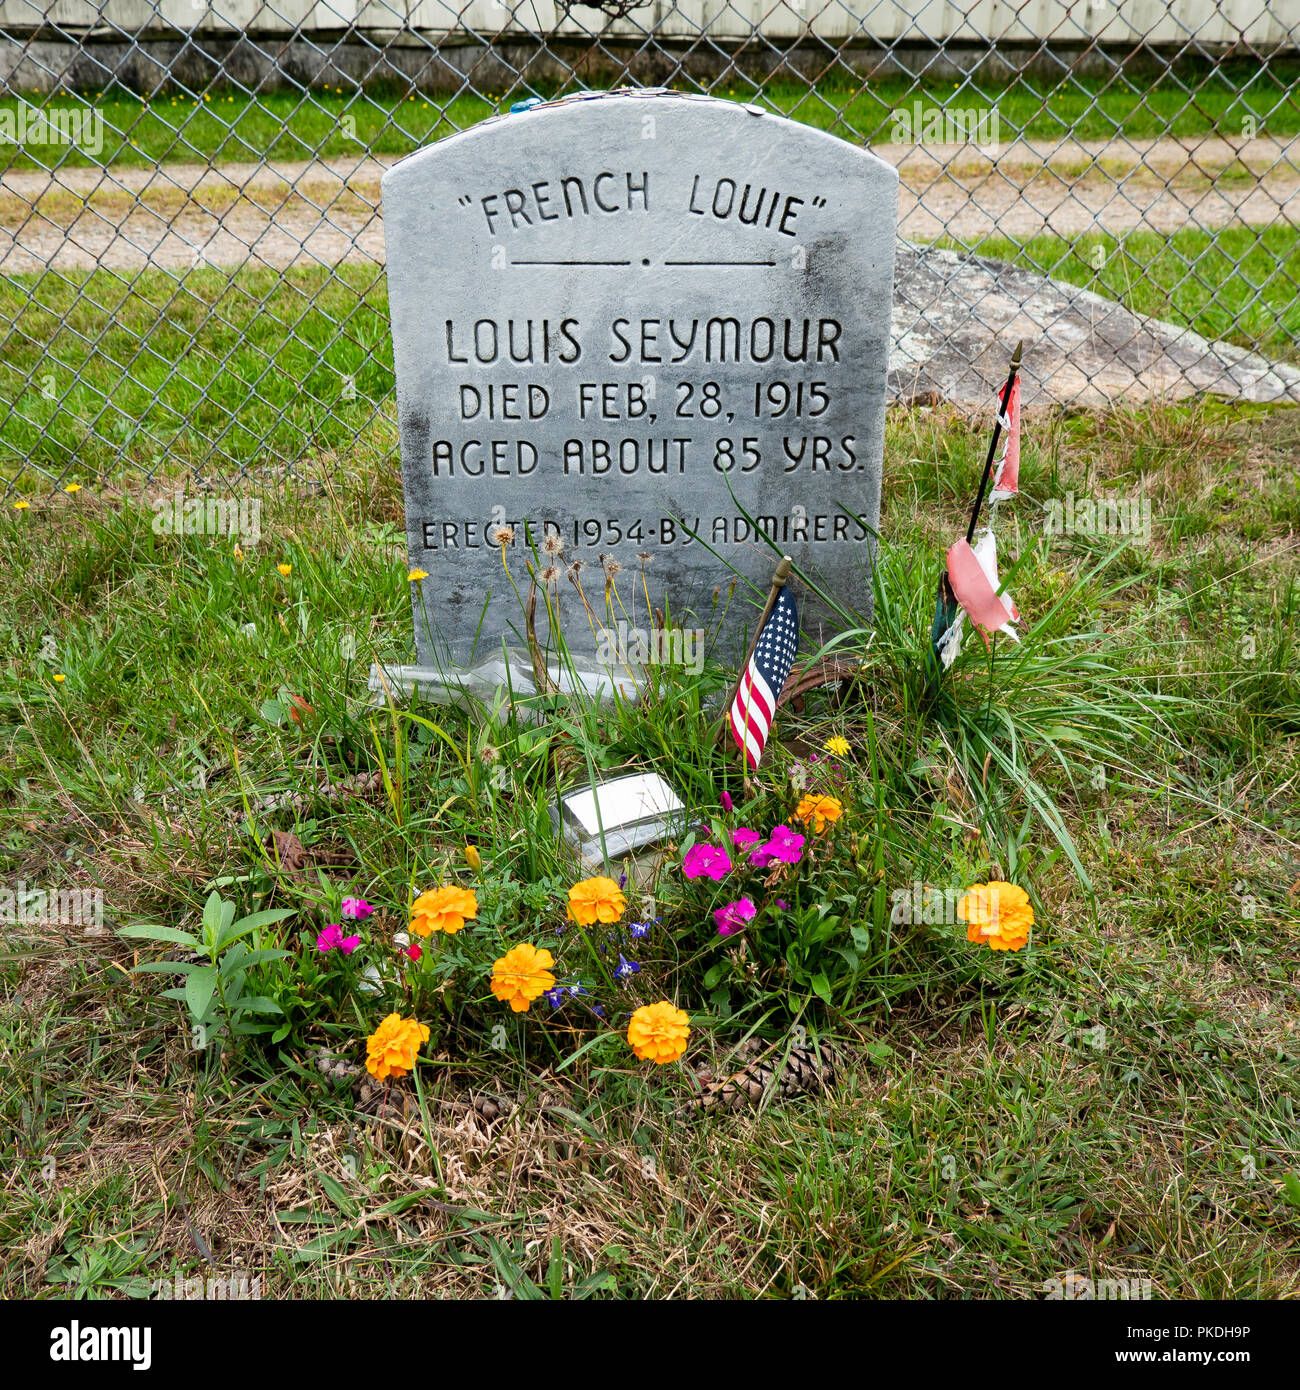 Das Grab und der Grabstein von Louis Seymour, bekannt als Französische Louie, einem Adirondack Guide, Trapper und Förster. Stockfoto